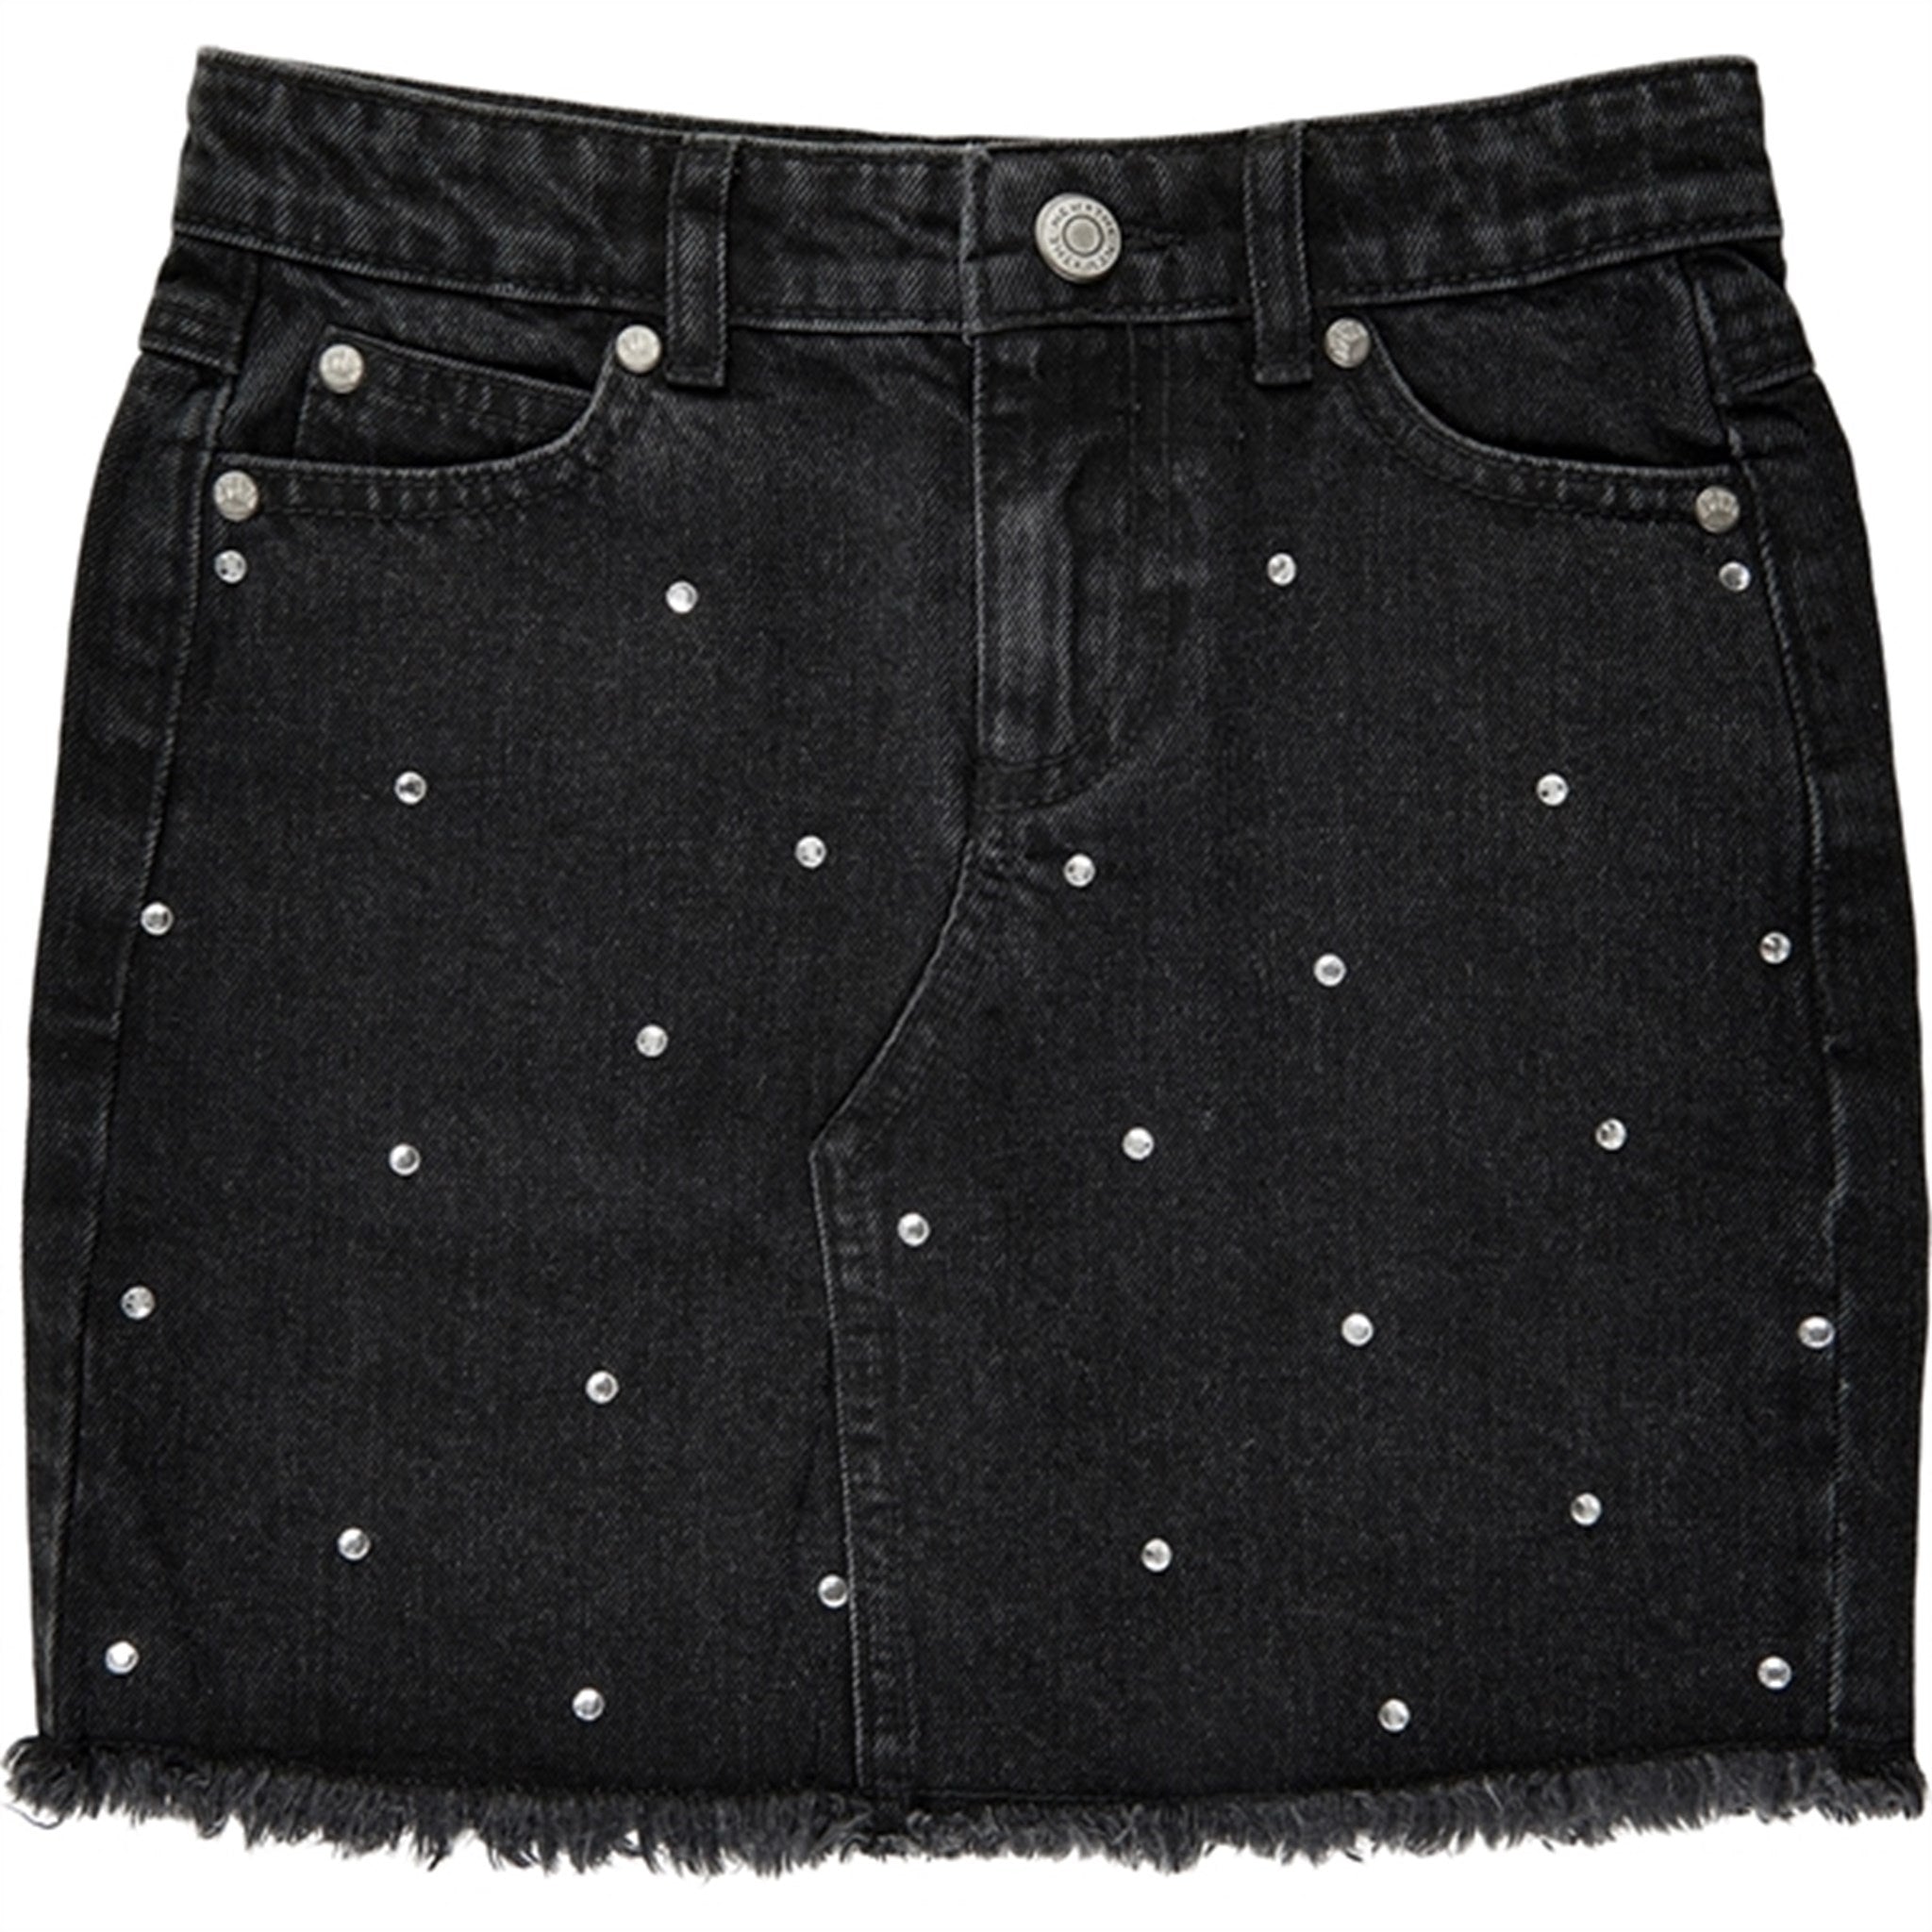 The New Black Denim Isia Denim Skirt